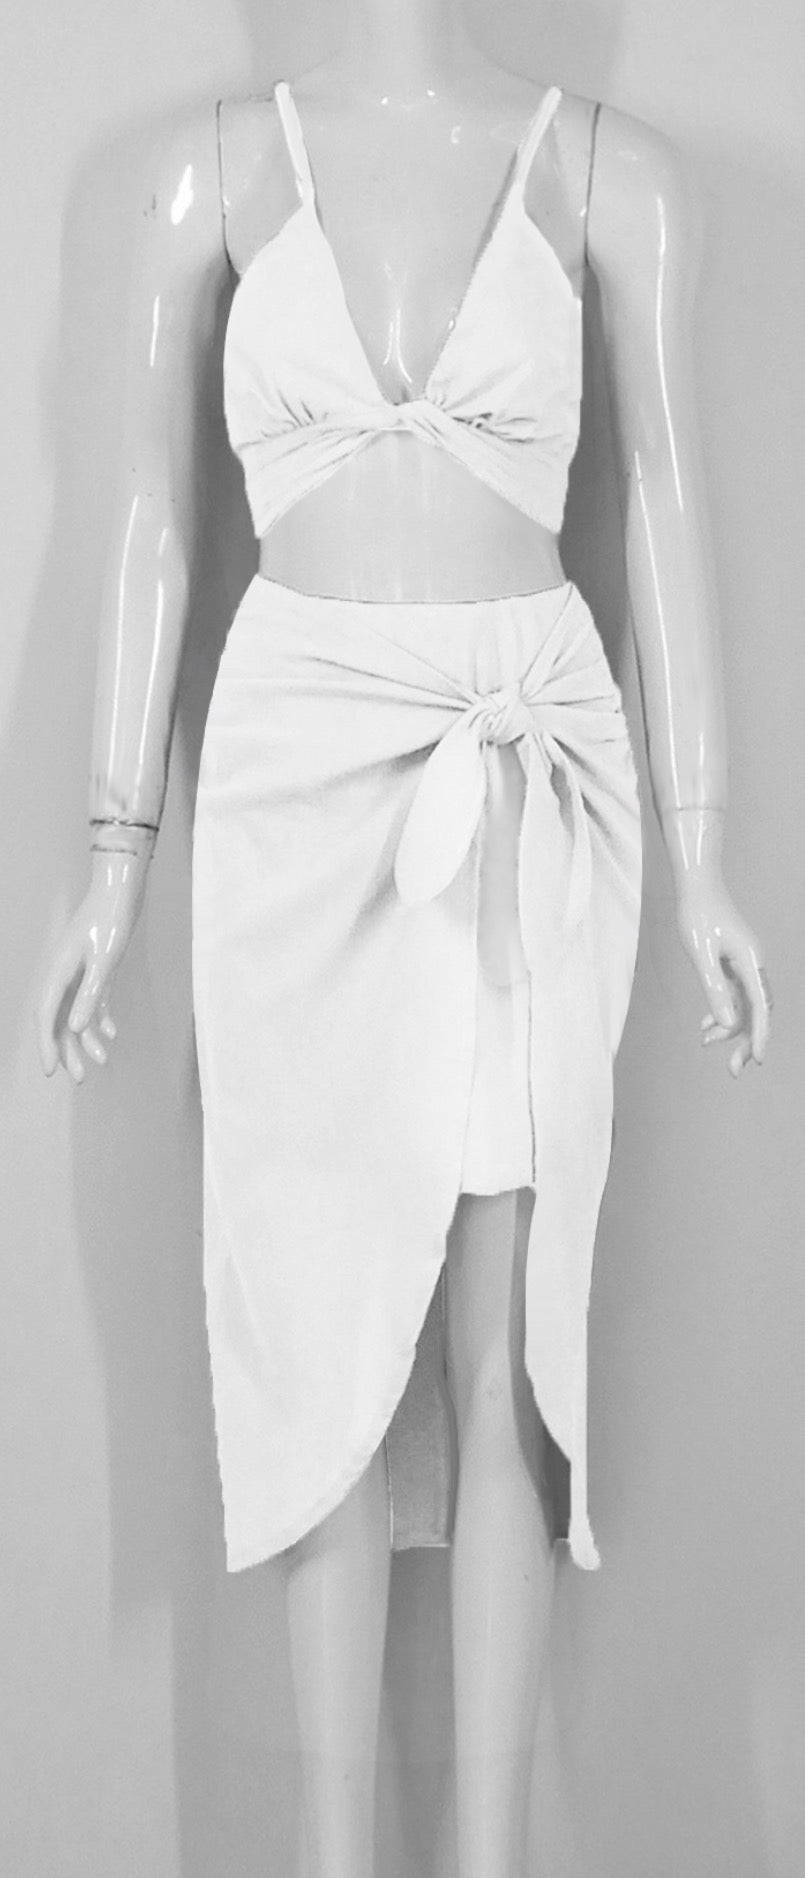 Beachy Skirt & Wrap Top Set in White